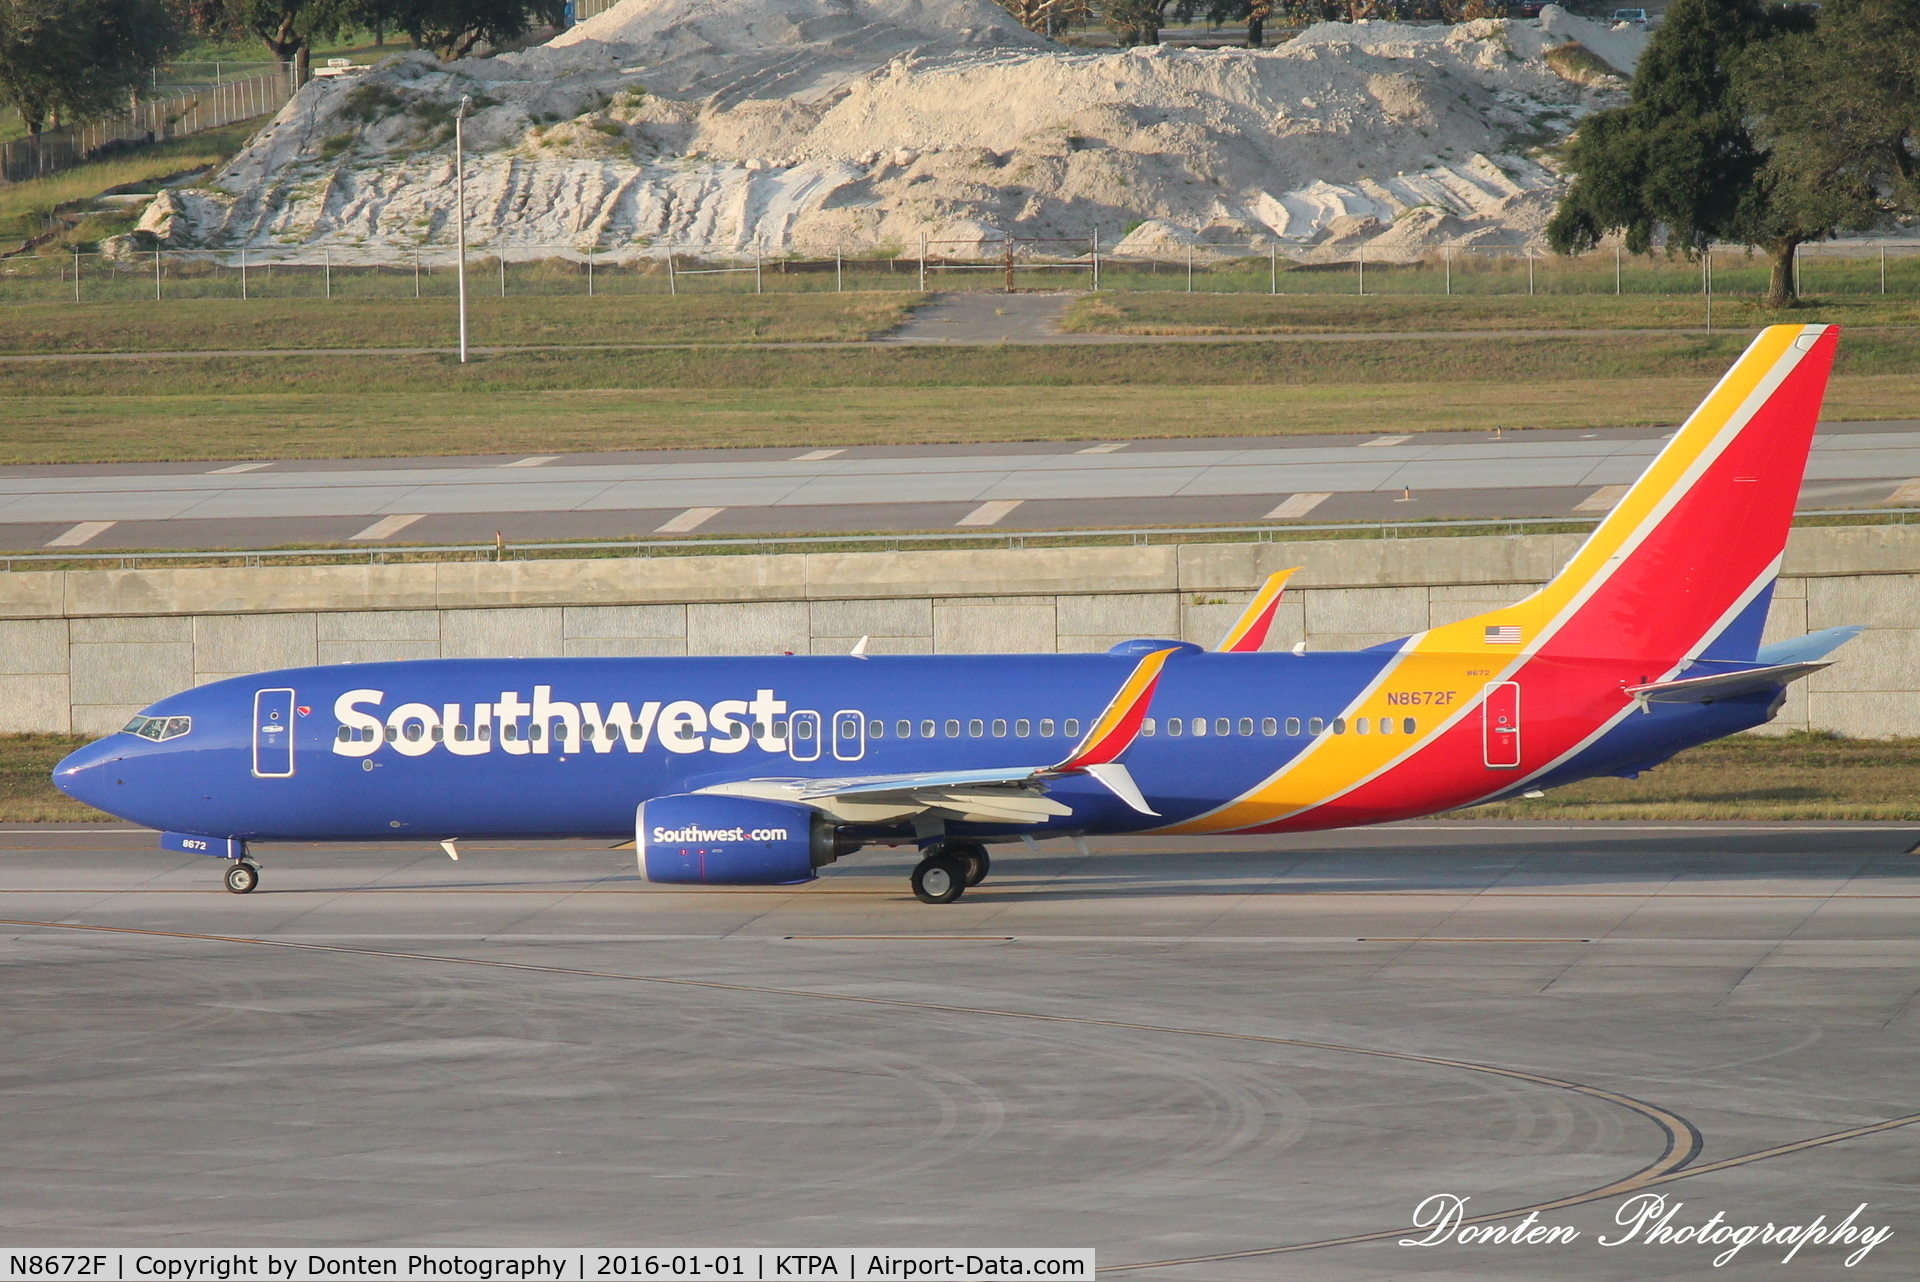 N8672F, 2015 Boeing 737-8H4 C/N 36940, Southwest Flight 2276 (N8672F) departs Tampa International Airport enroute to Phoenix-Sky Harbor International Airport